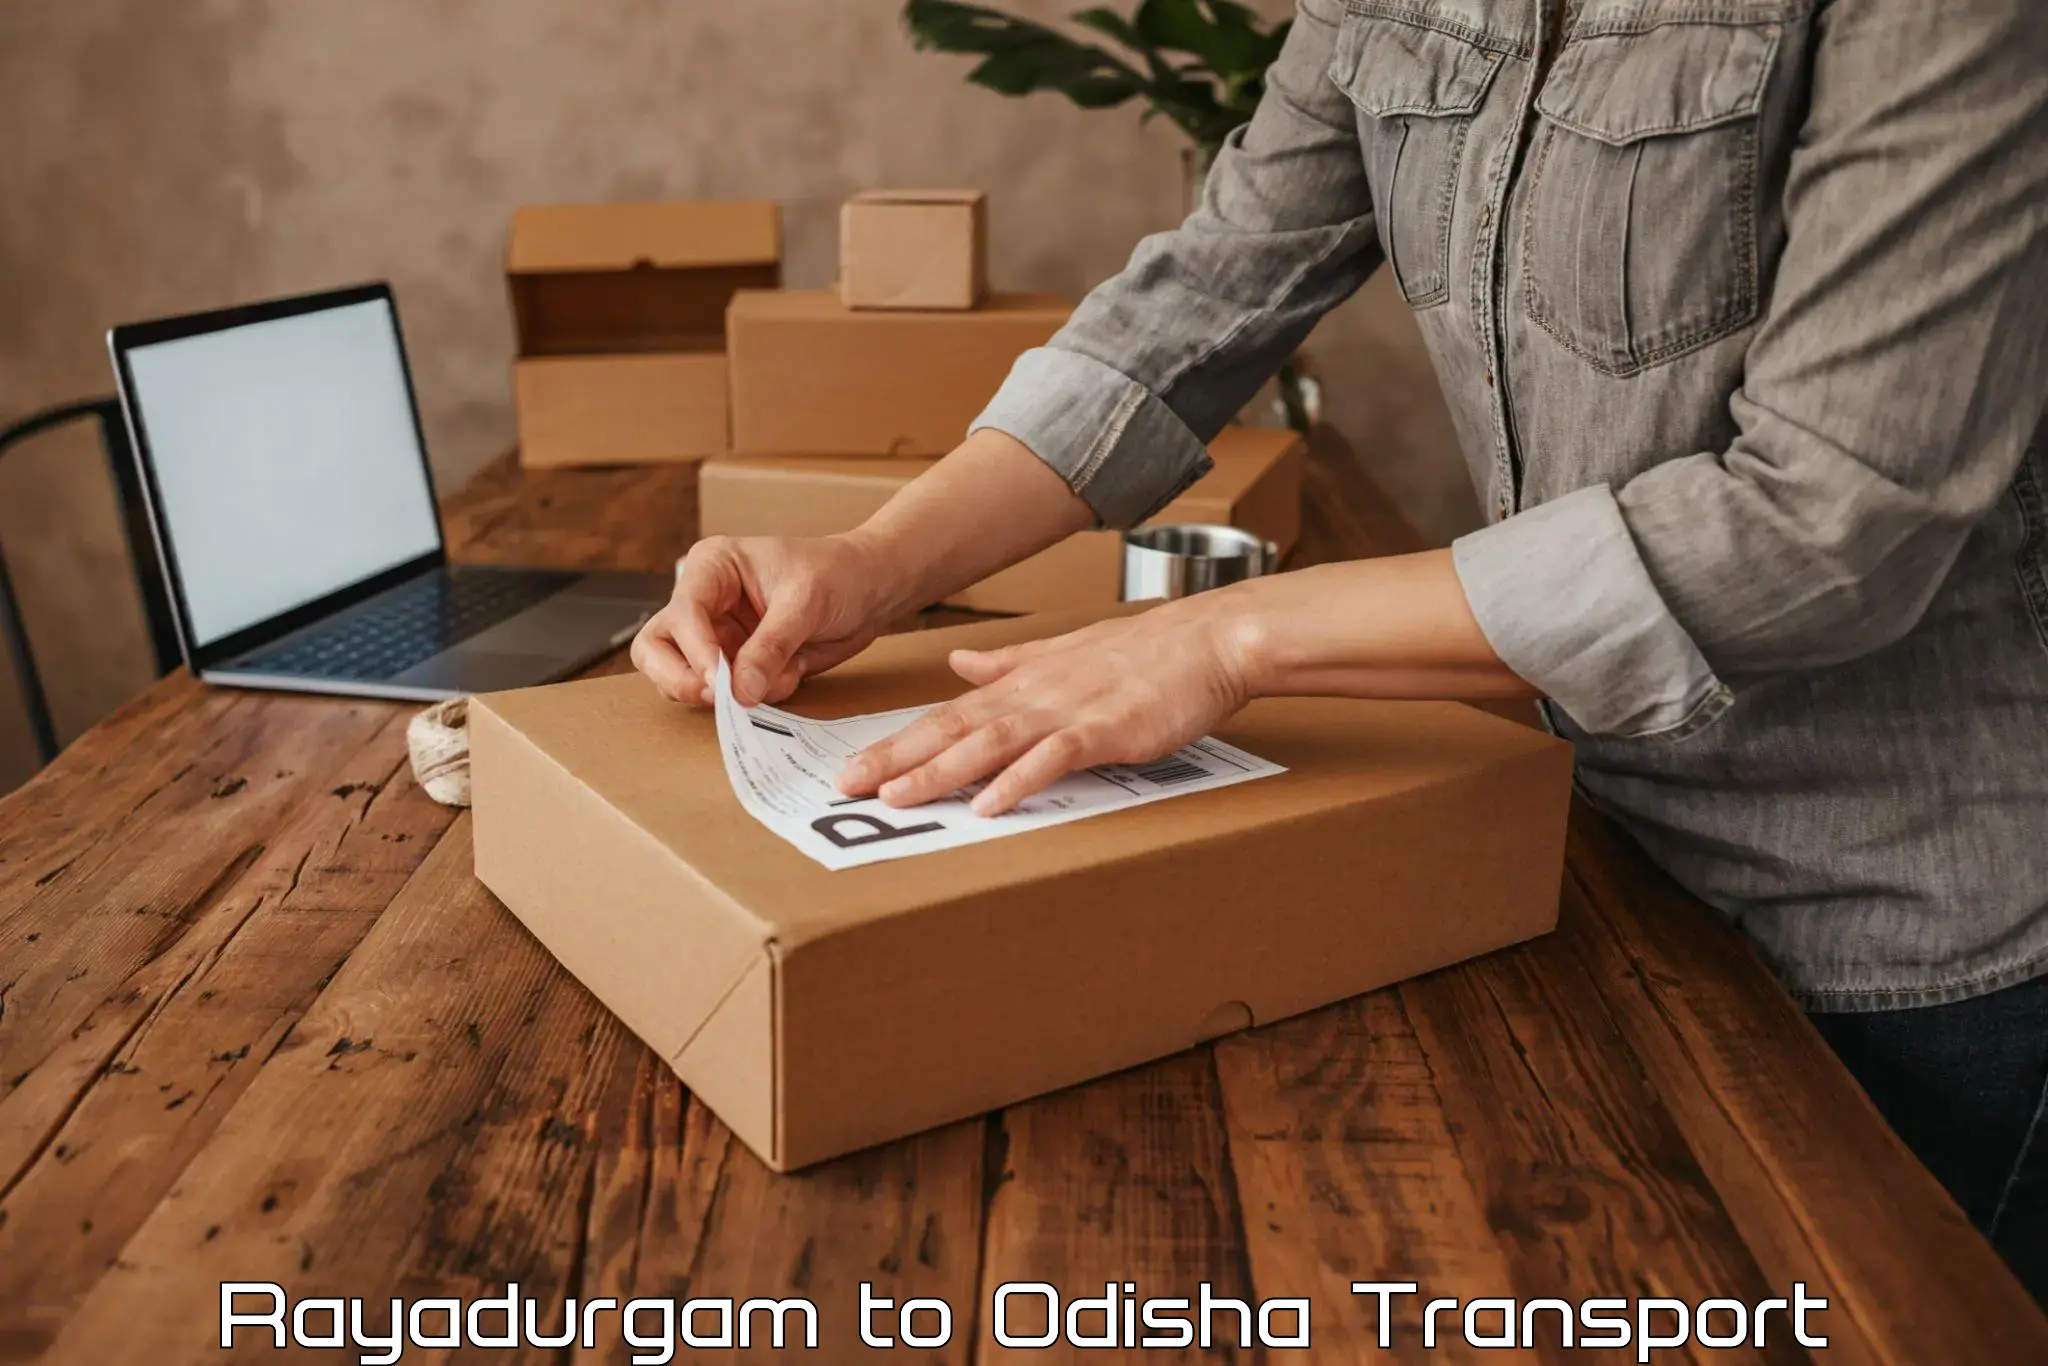 Online transport booking Rayadurgam to Bhubaneswar